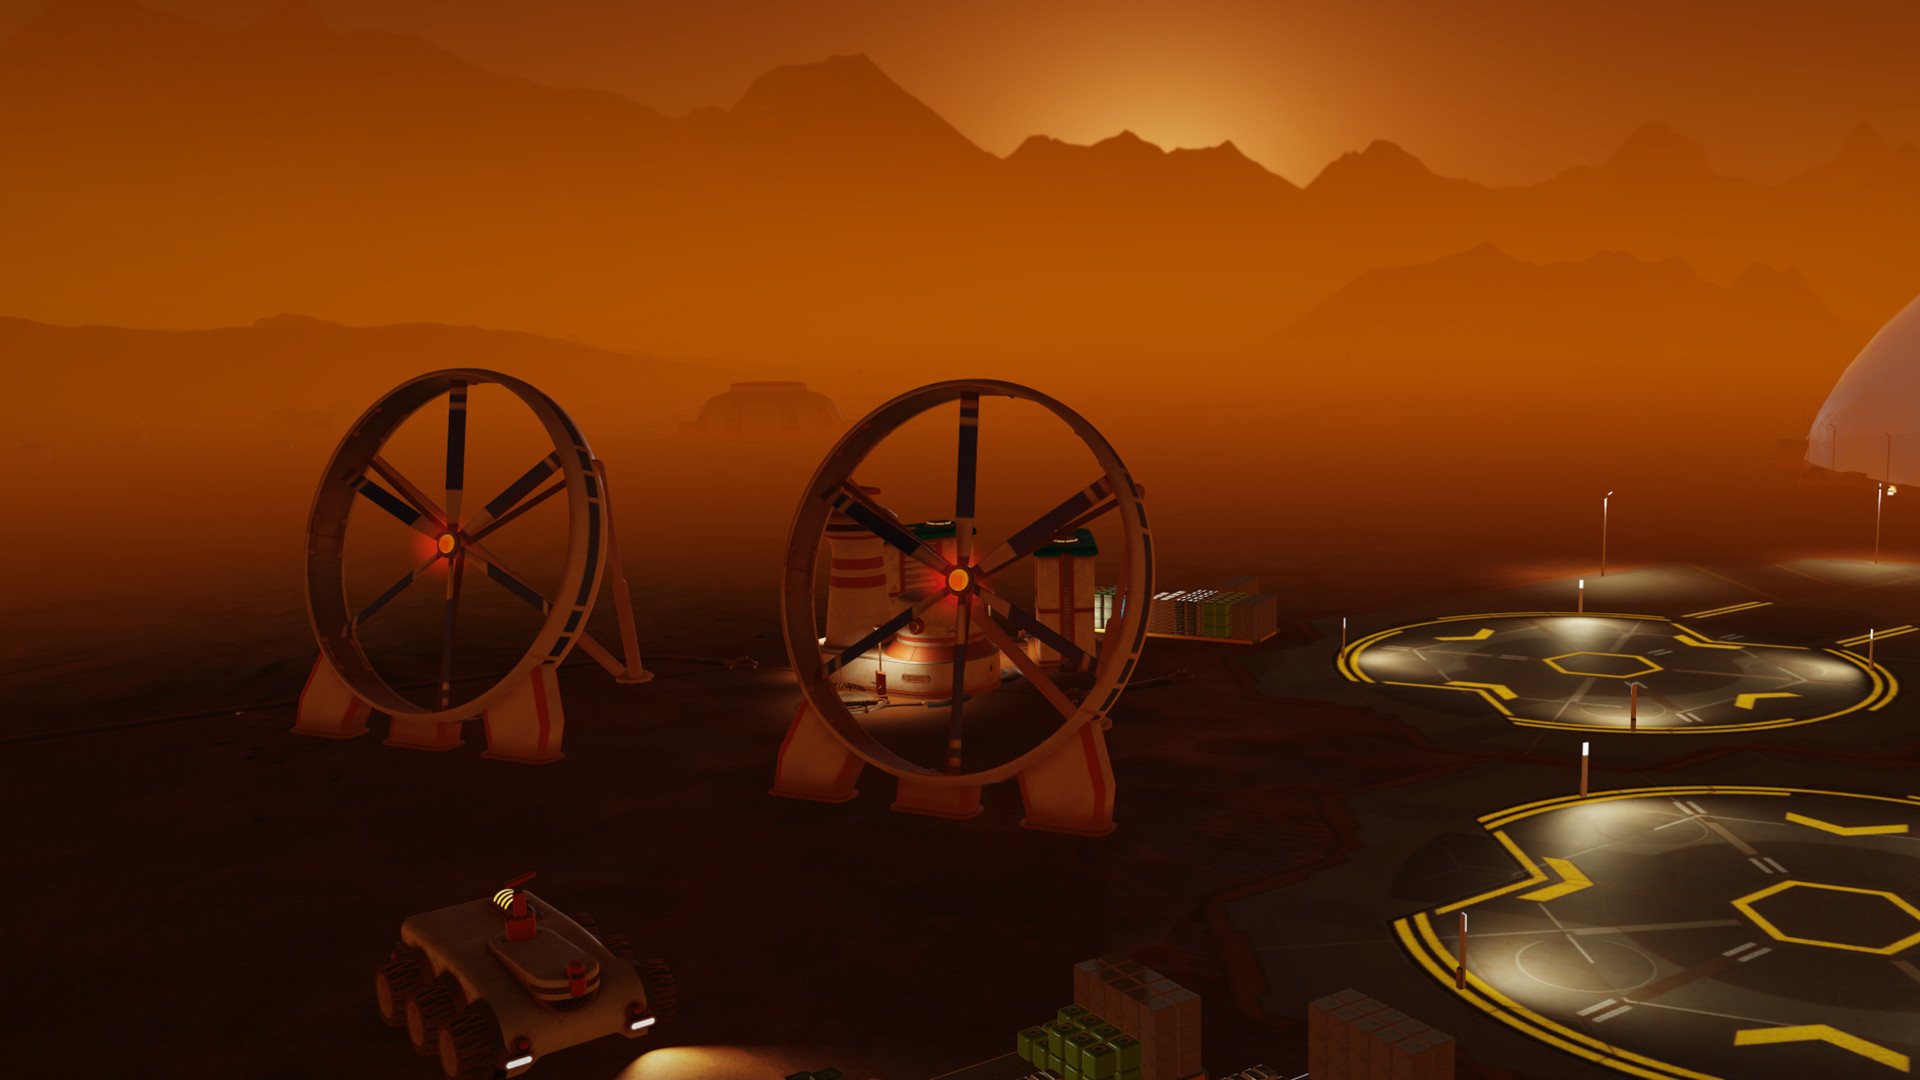 Surviving Mars - Space Race Plus DLC EU Steam CD Key